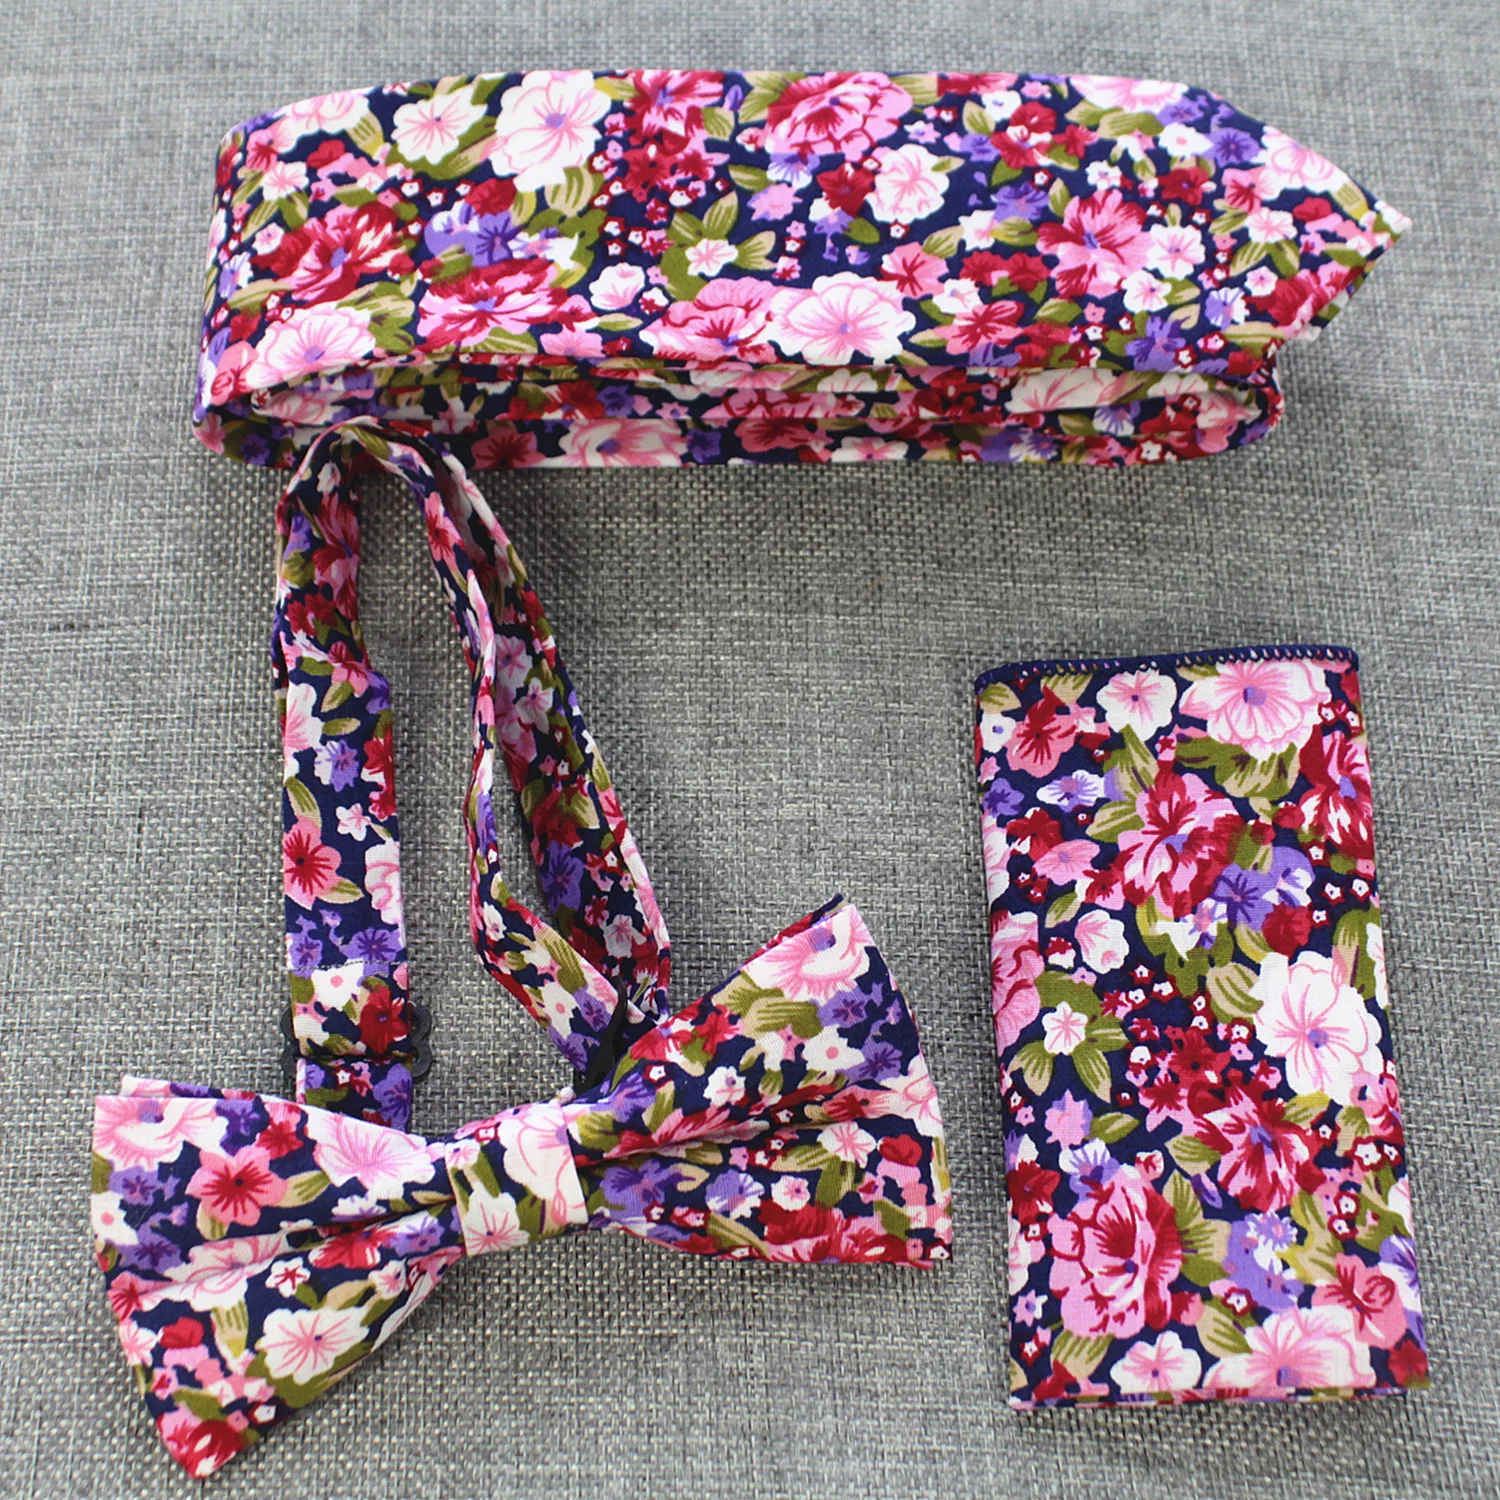  Ricnais 3PCS 6cm Slim Cotton Tie Set For Men Floral Print Bowtie Handkerchief Necktie Pocket Square